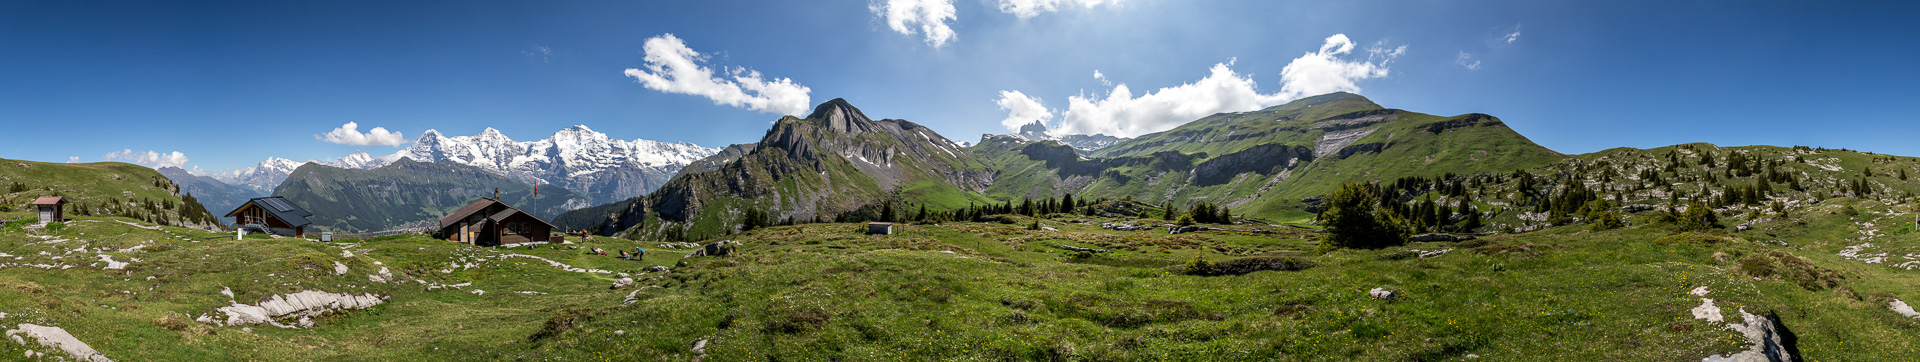 Sattes Grün und weiße Bergriesen als Kulisse an dieser gemütlichen Hütte - mit Link zu mountainpanoramas